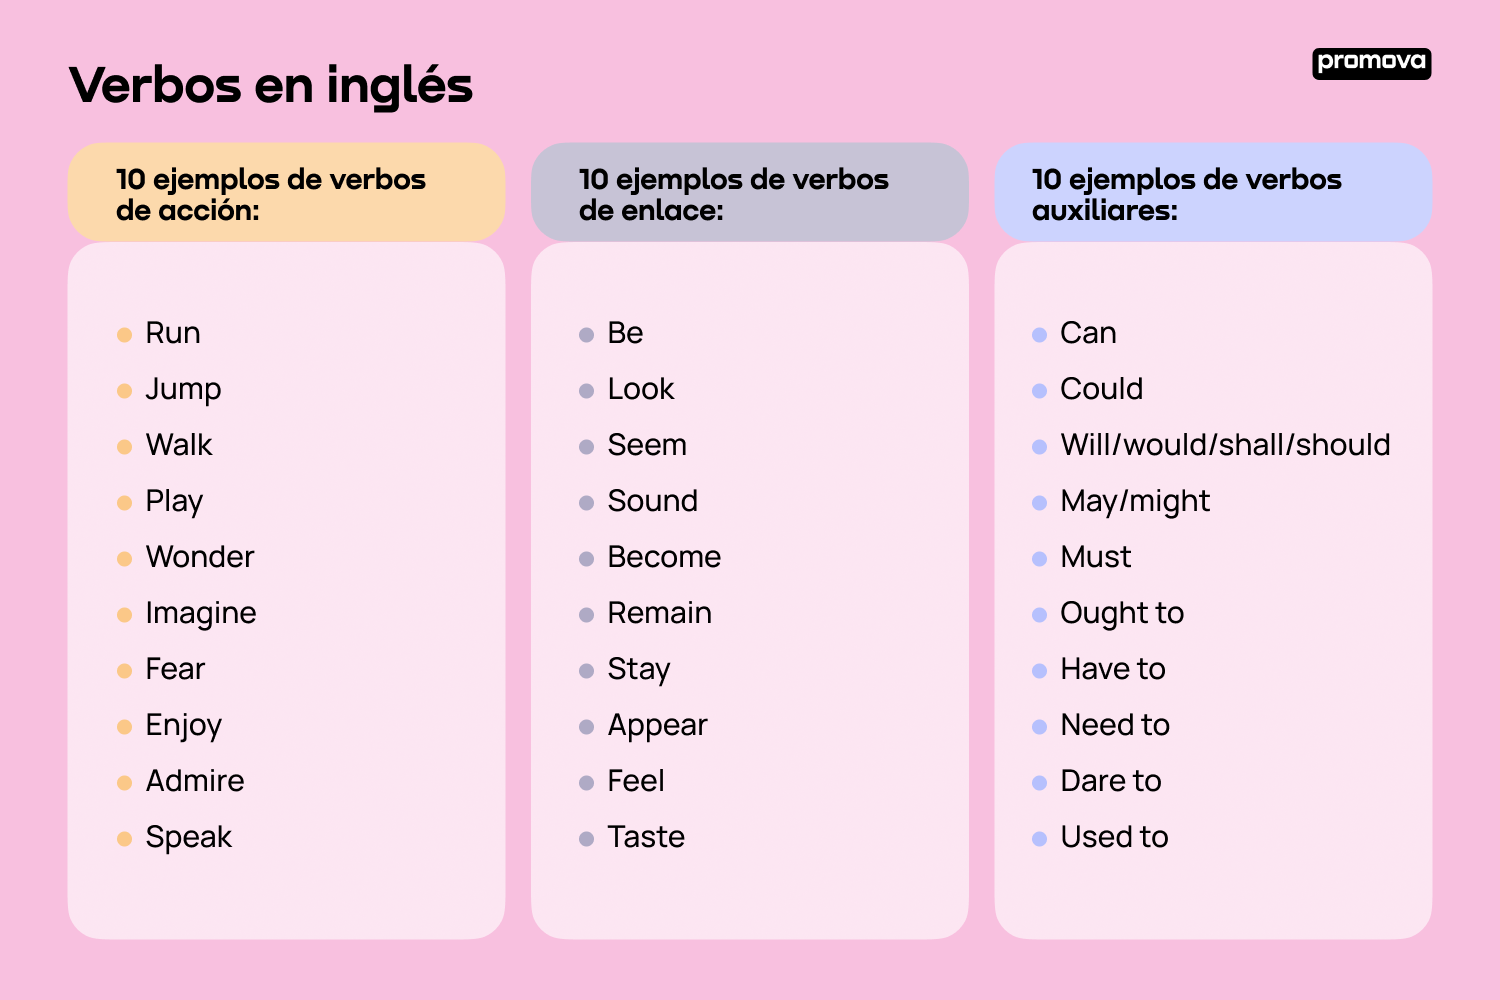 Verbos en inglés: Una guía detallada para descubrir su uso y significado